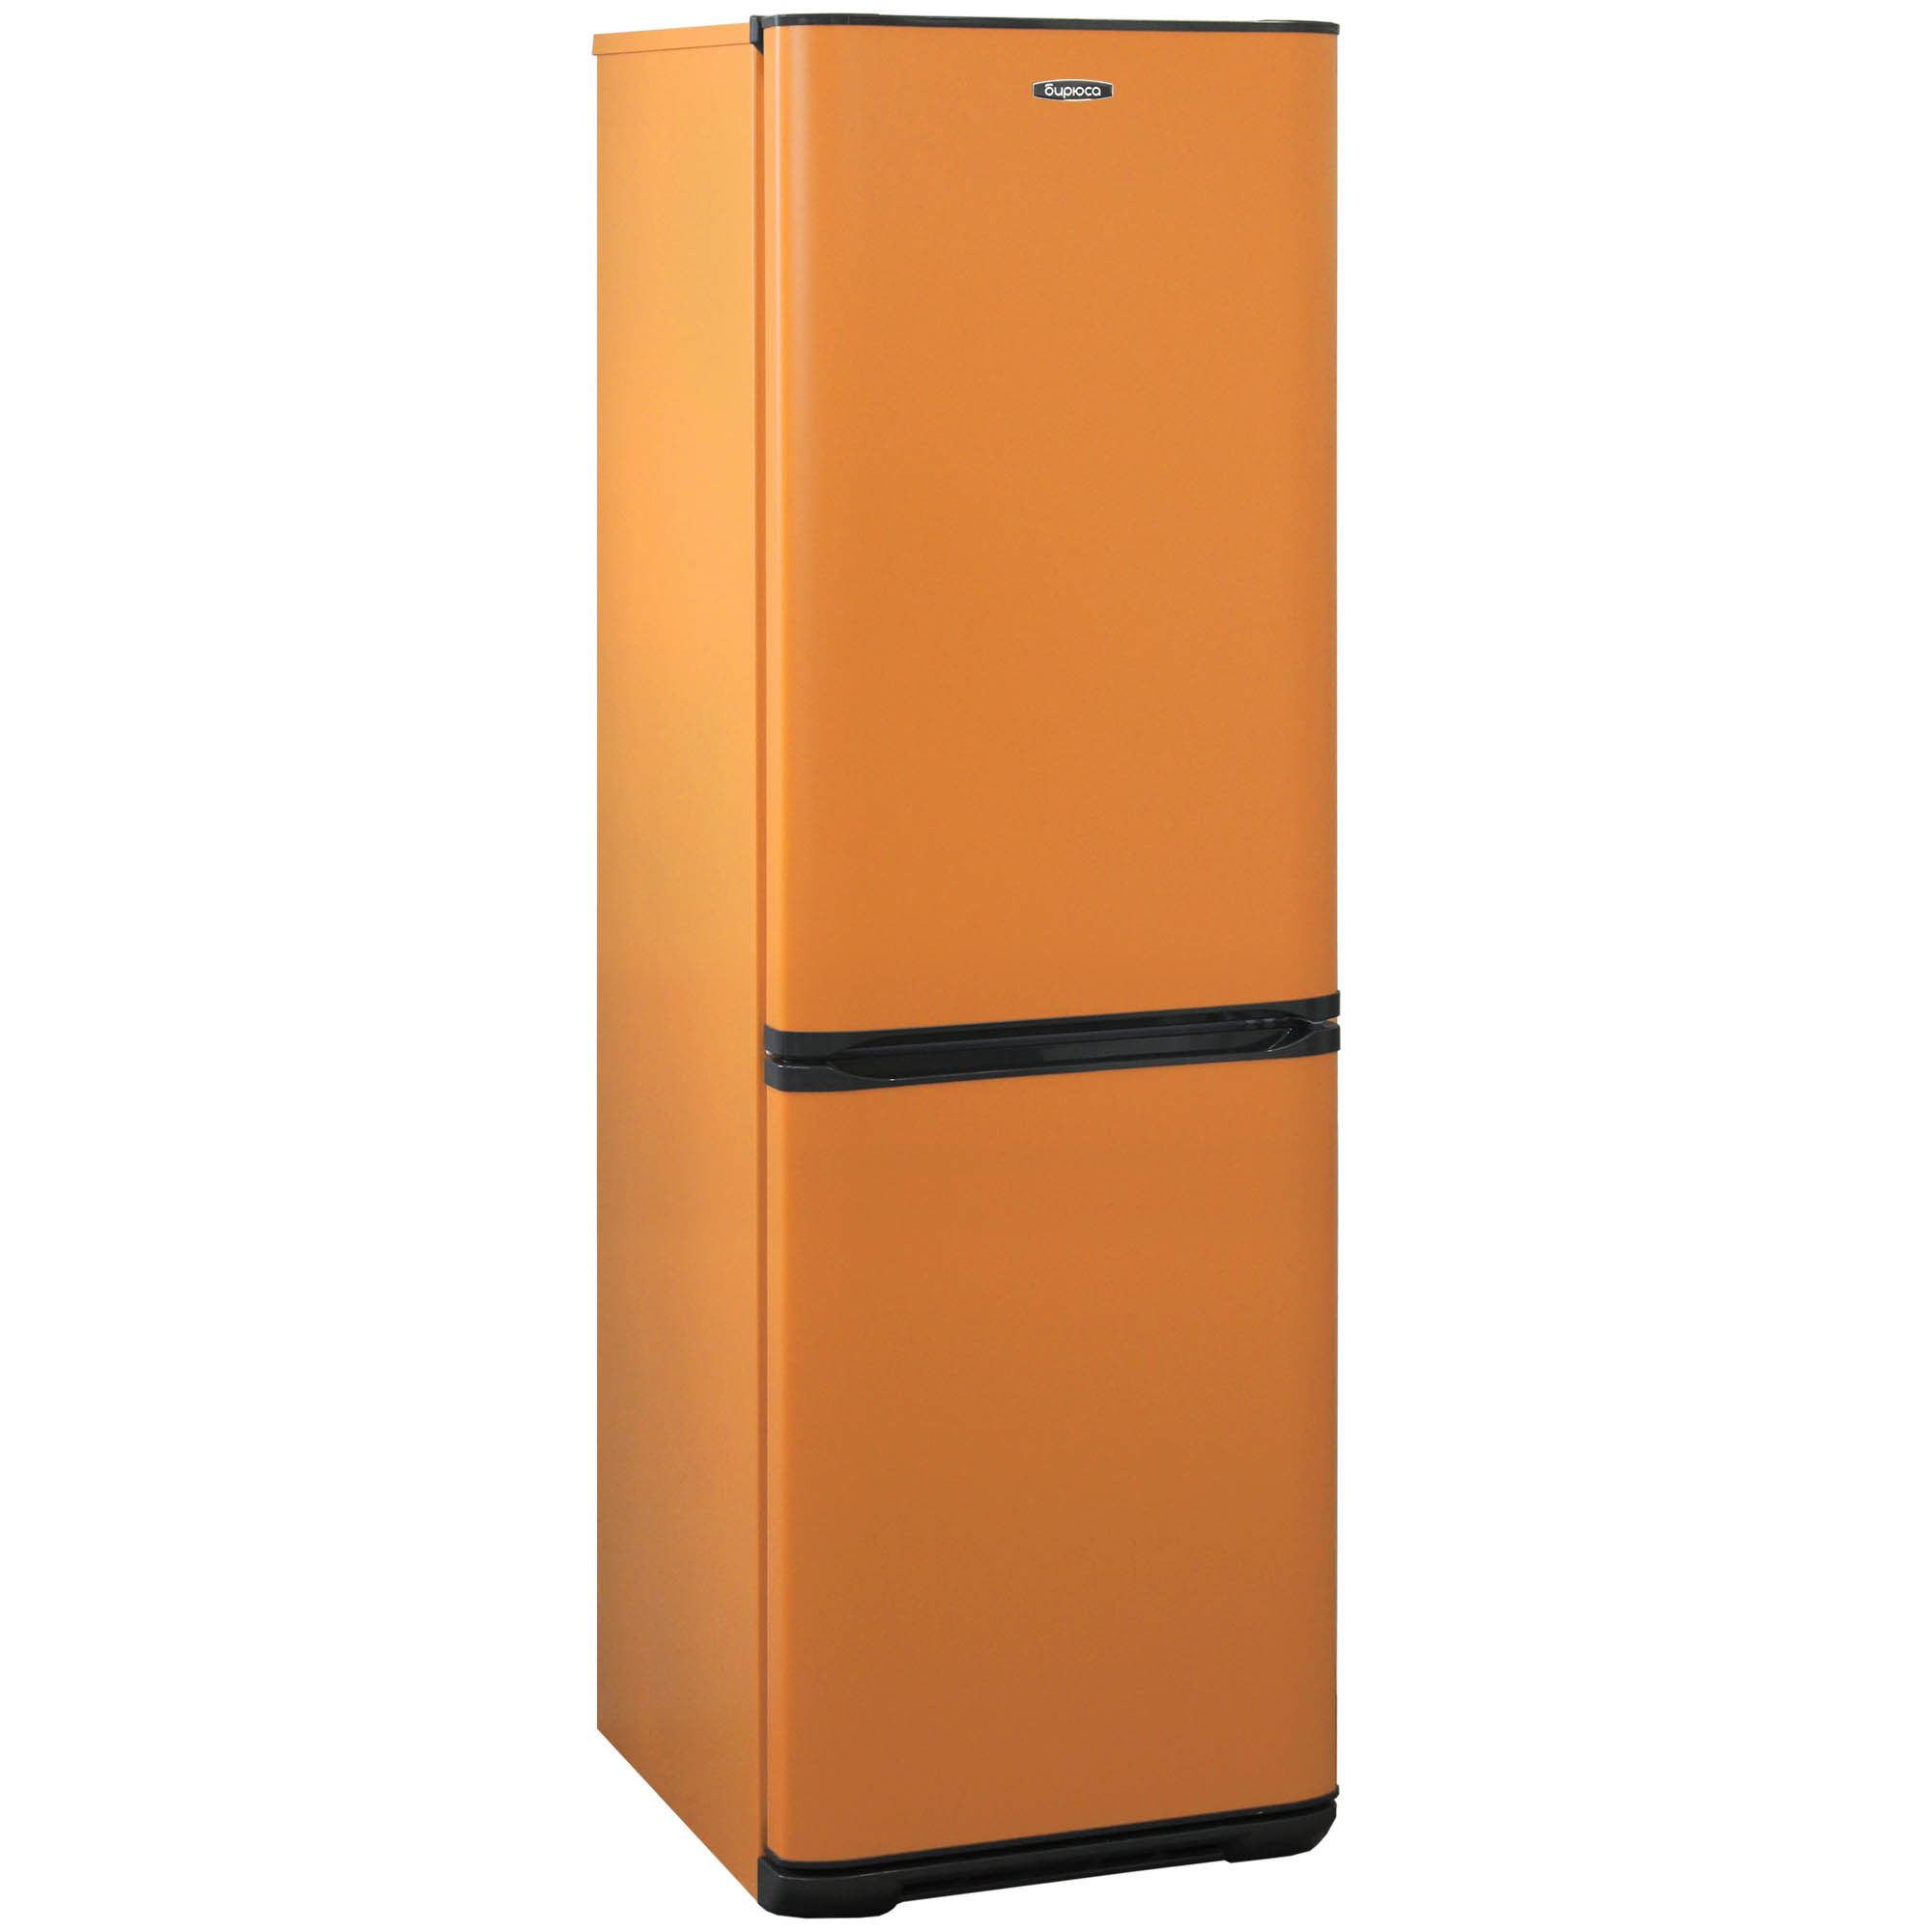 Купить холодильник с доставкой спб. Холодильник Бирюса t633 оранжевый. Холодильник Бирюса t320nf. Бирюса t340nf оранжевый. Бирюса t631 холодильник оранжевый.